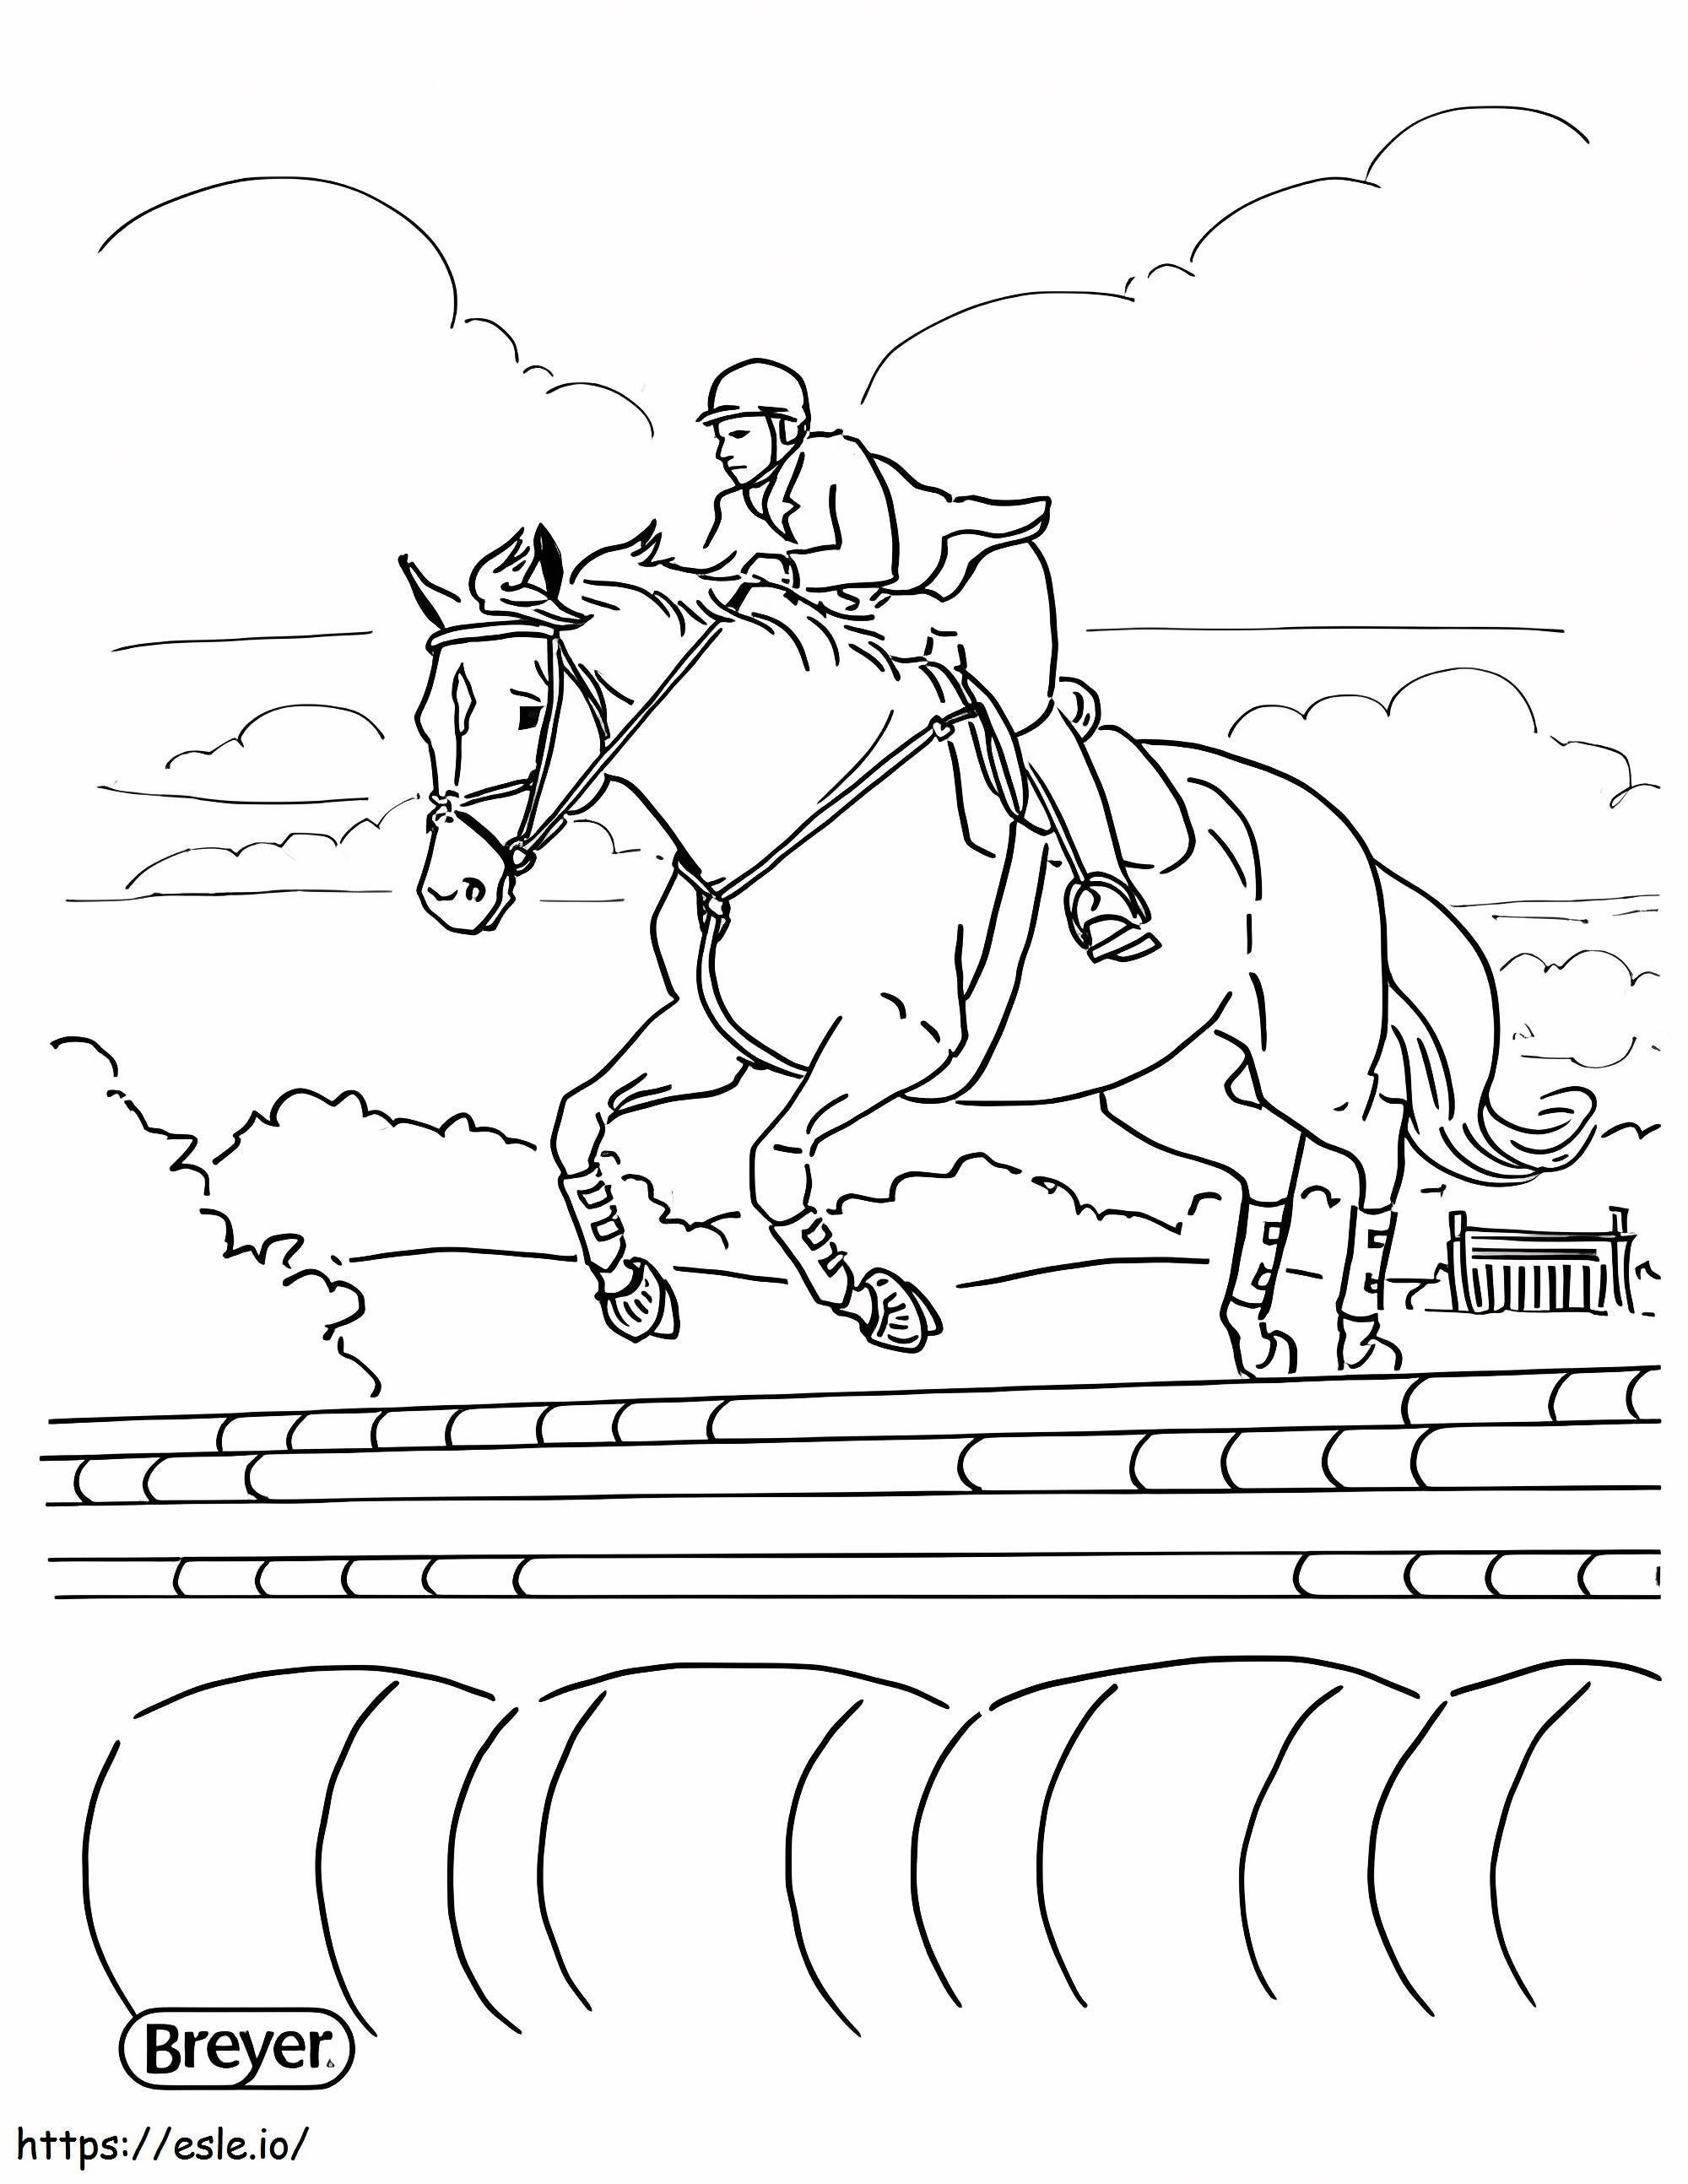 At üstünde oturan binicilik sporcusu boyama